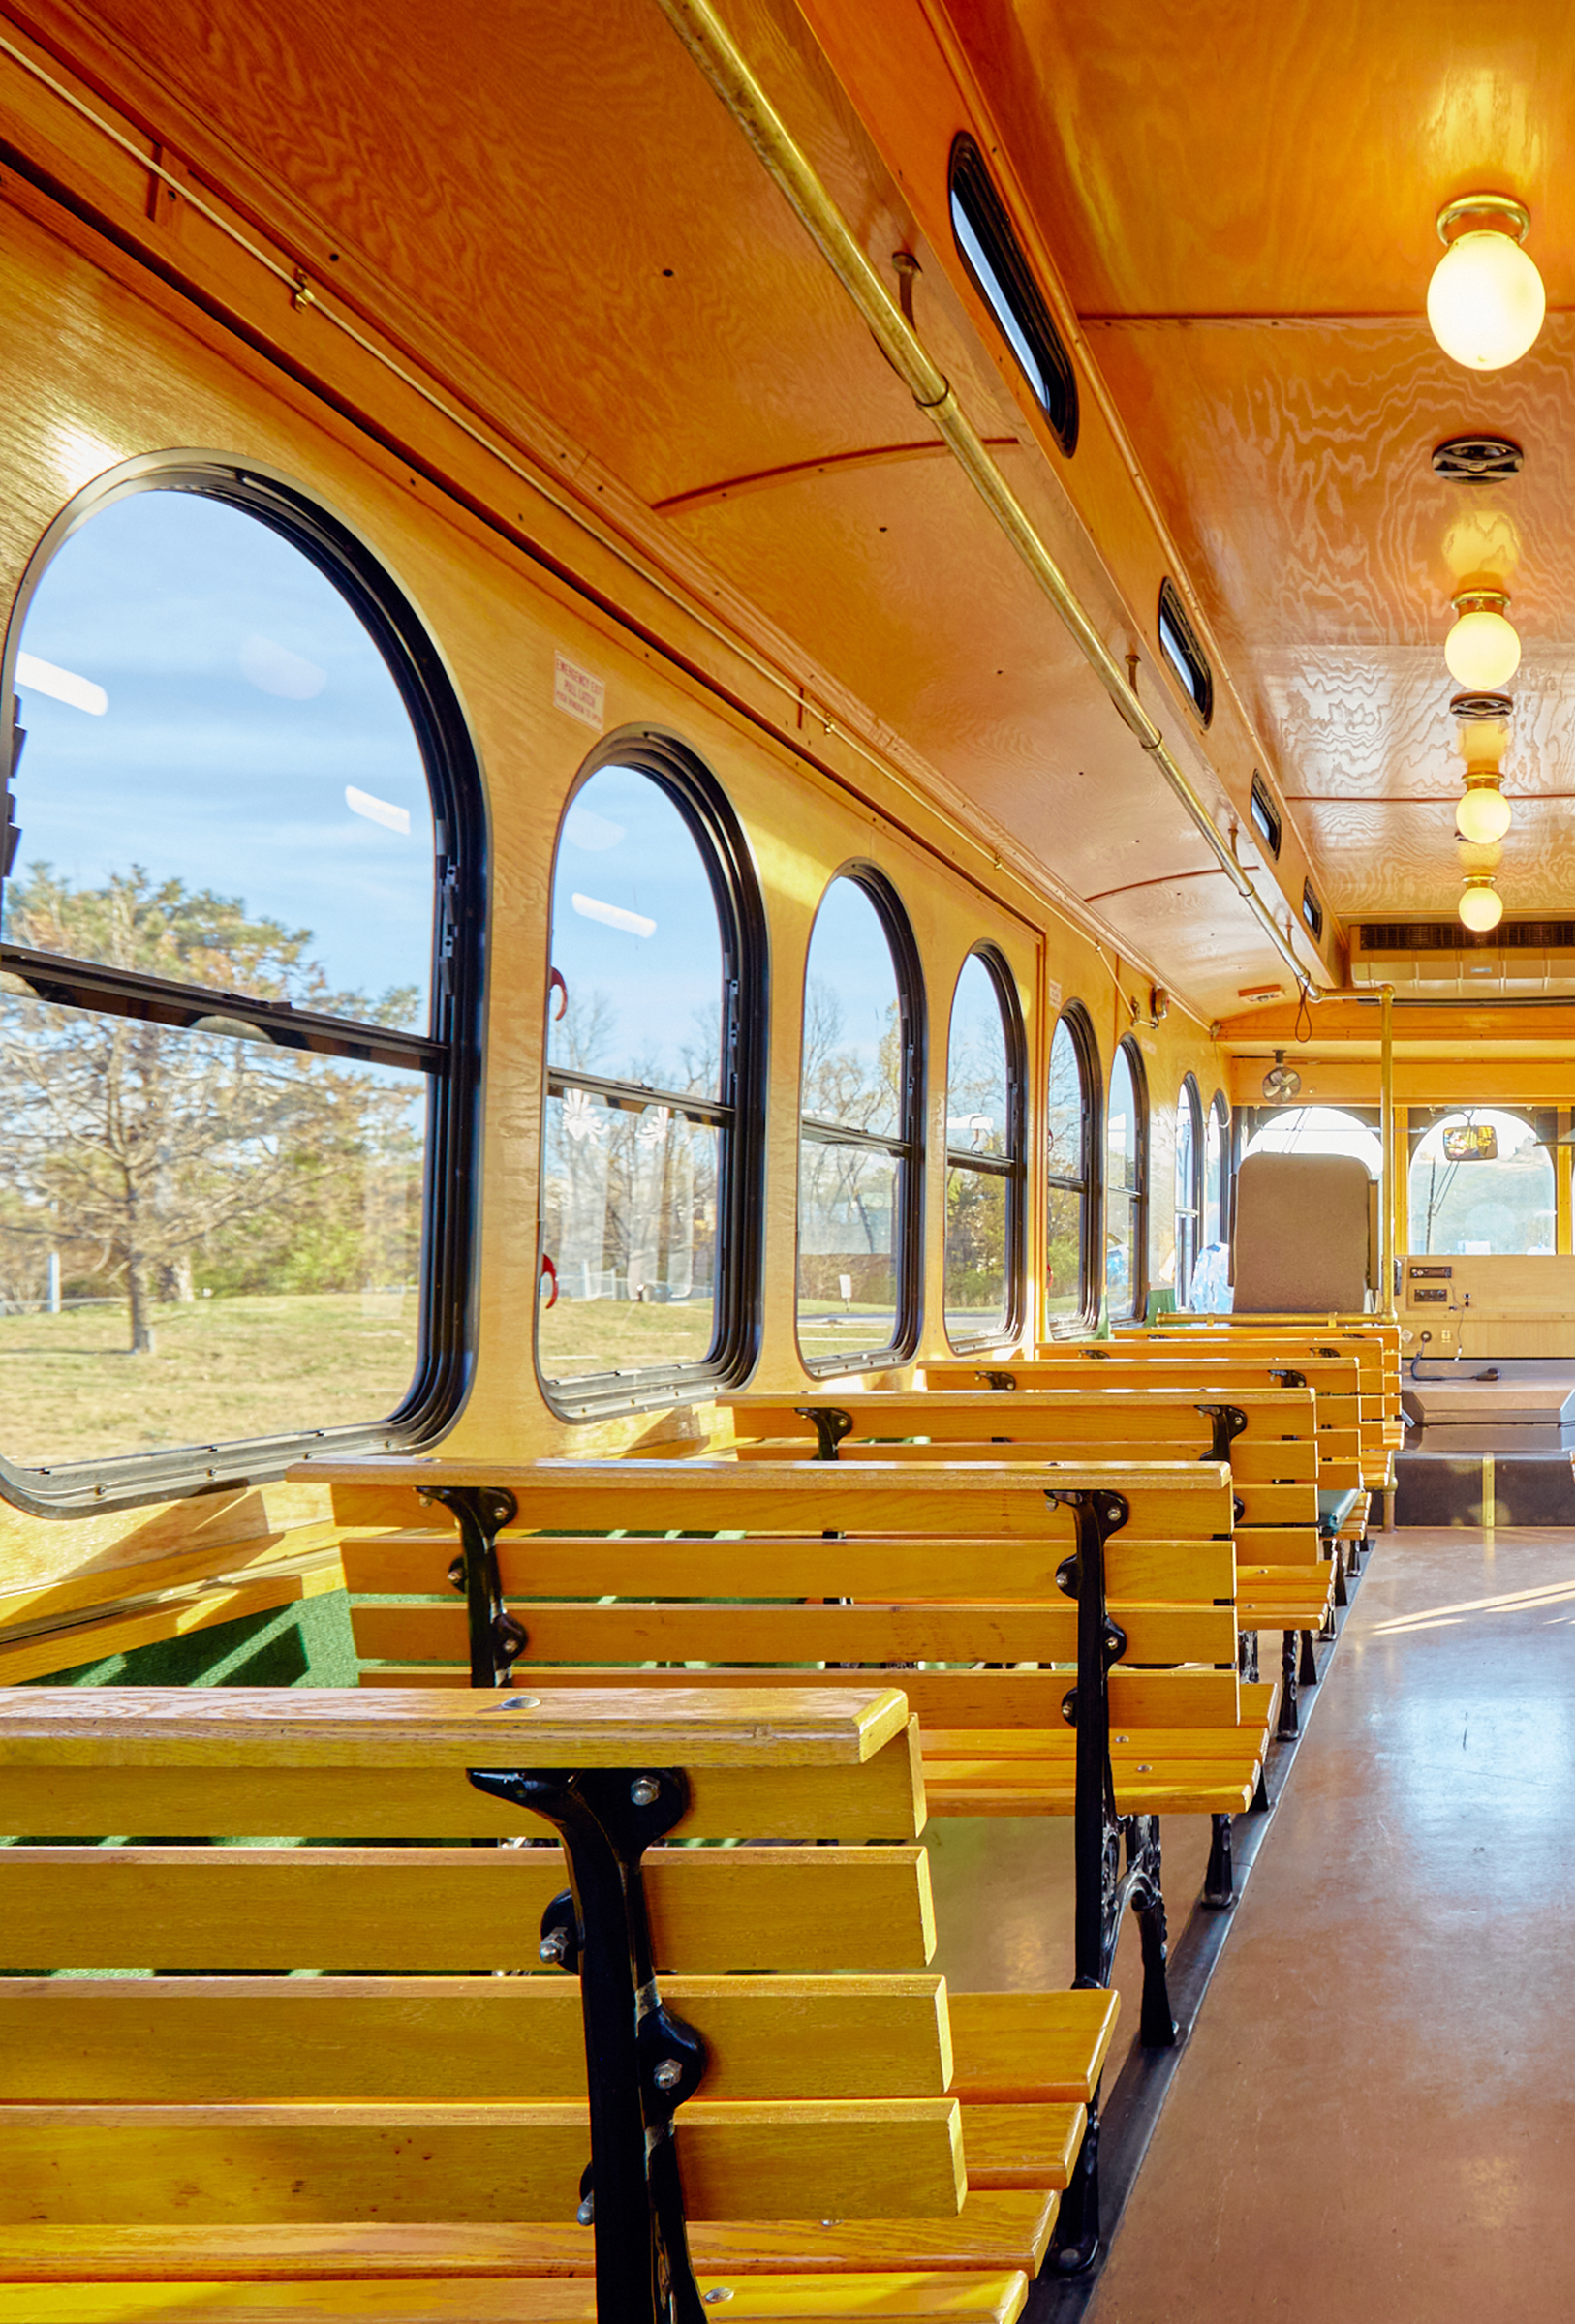 Golden oak interior for vintage trolley